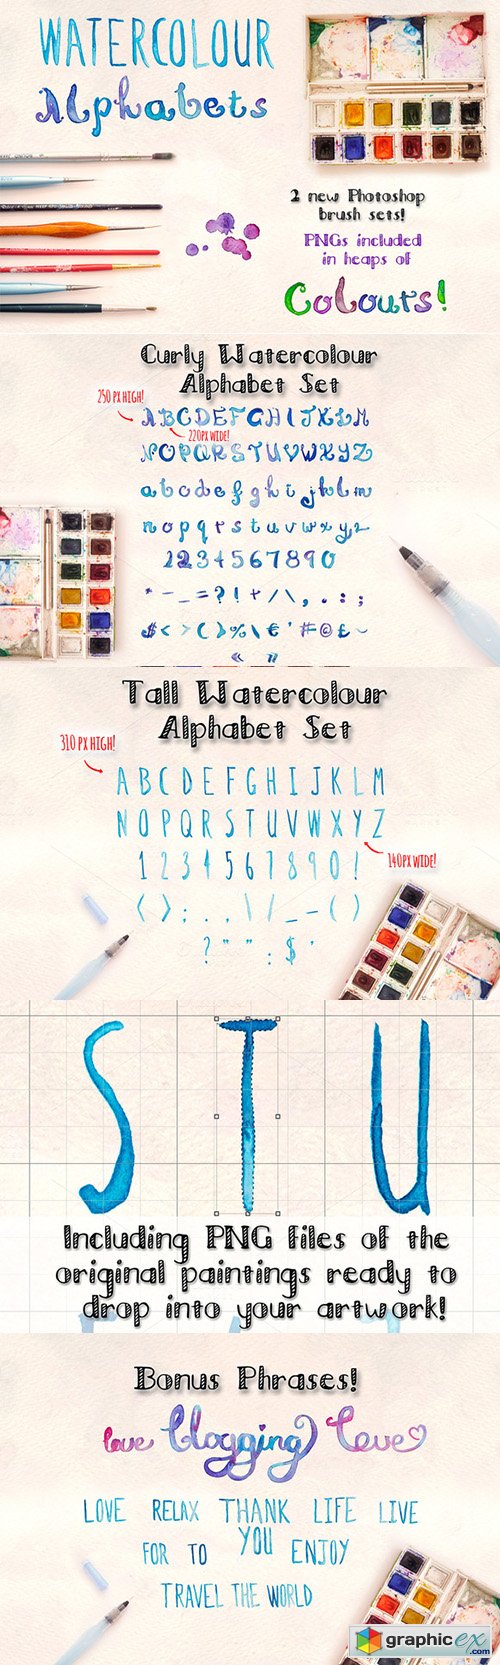 2 Watercolour Alphabet Brush Sets